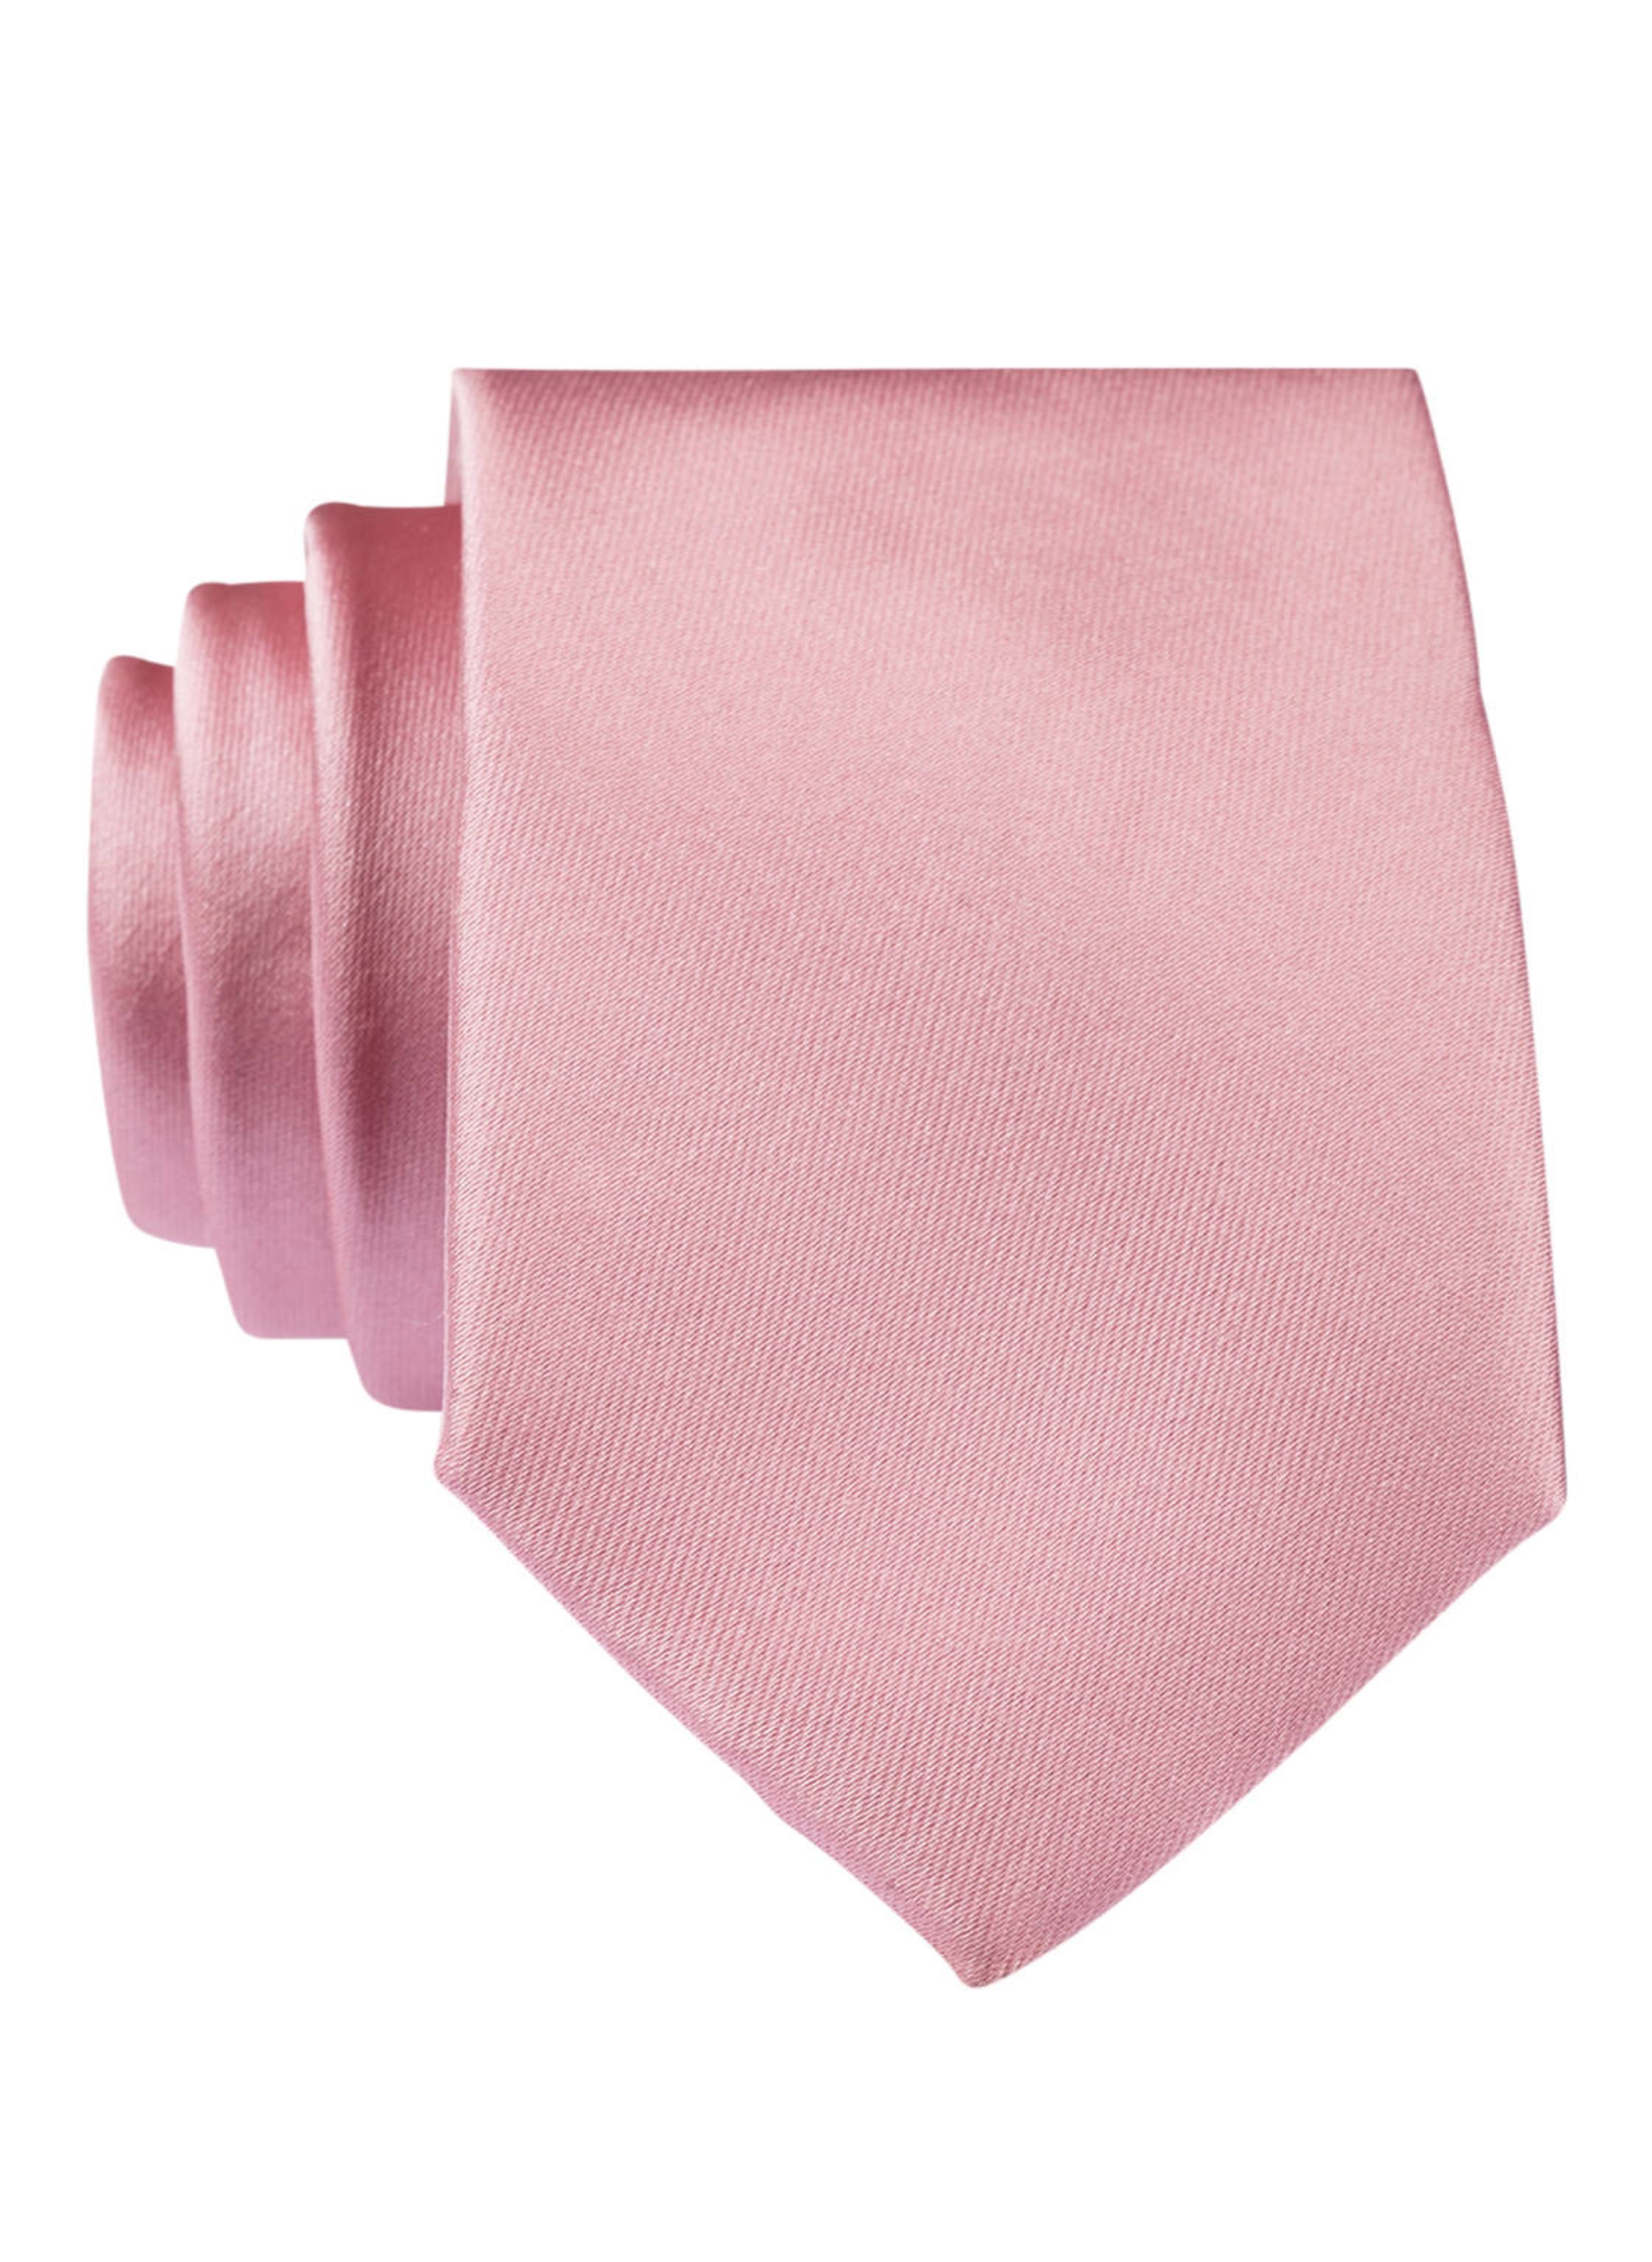 Krawatte altrosa in PAUL